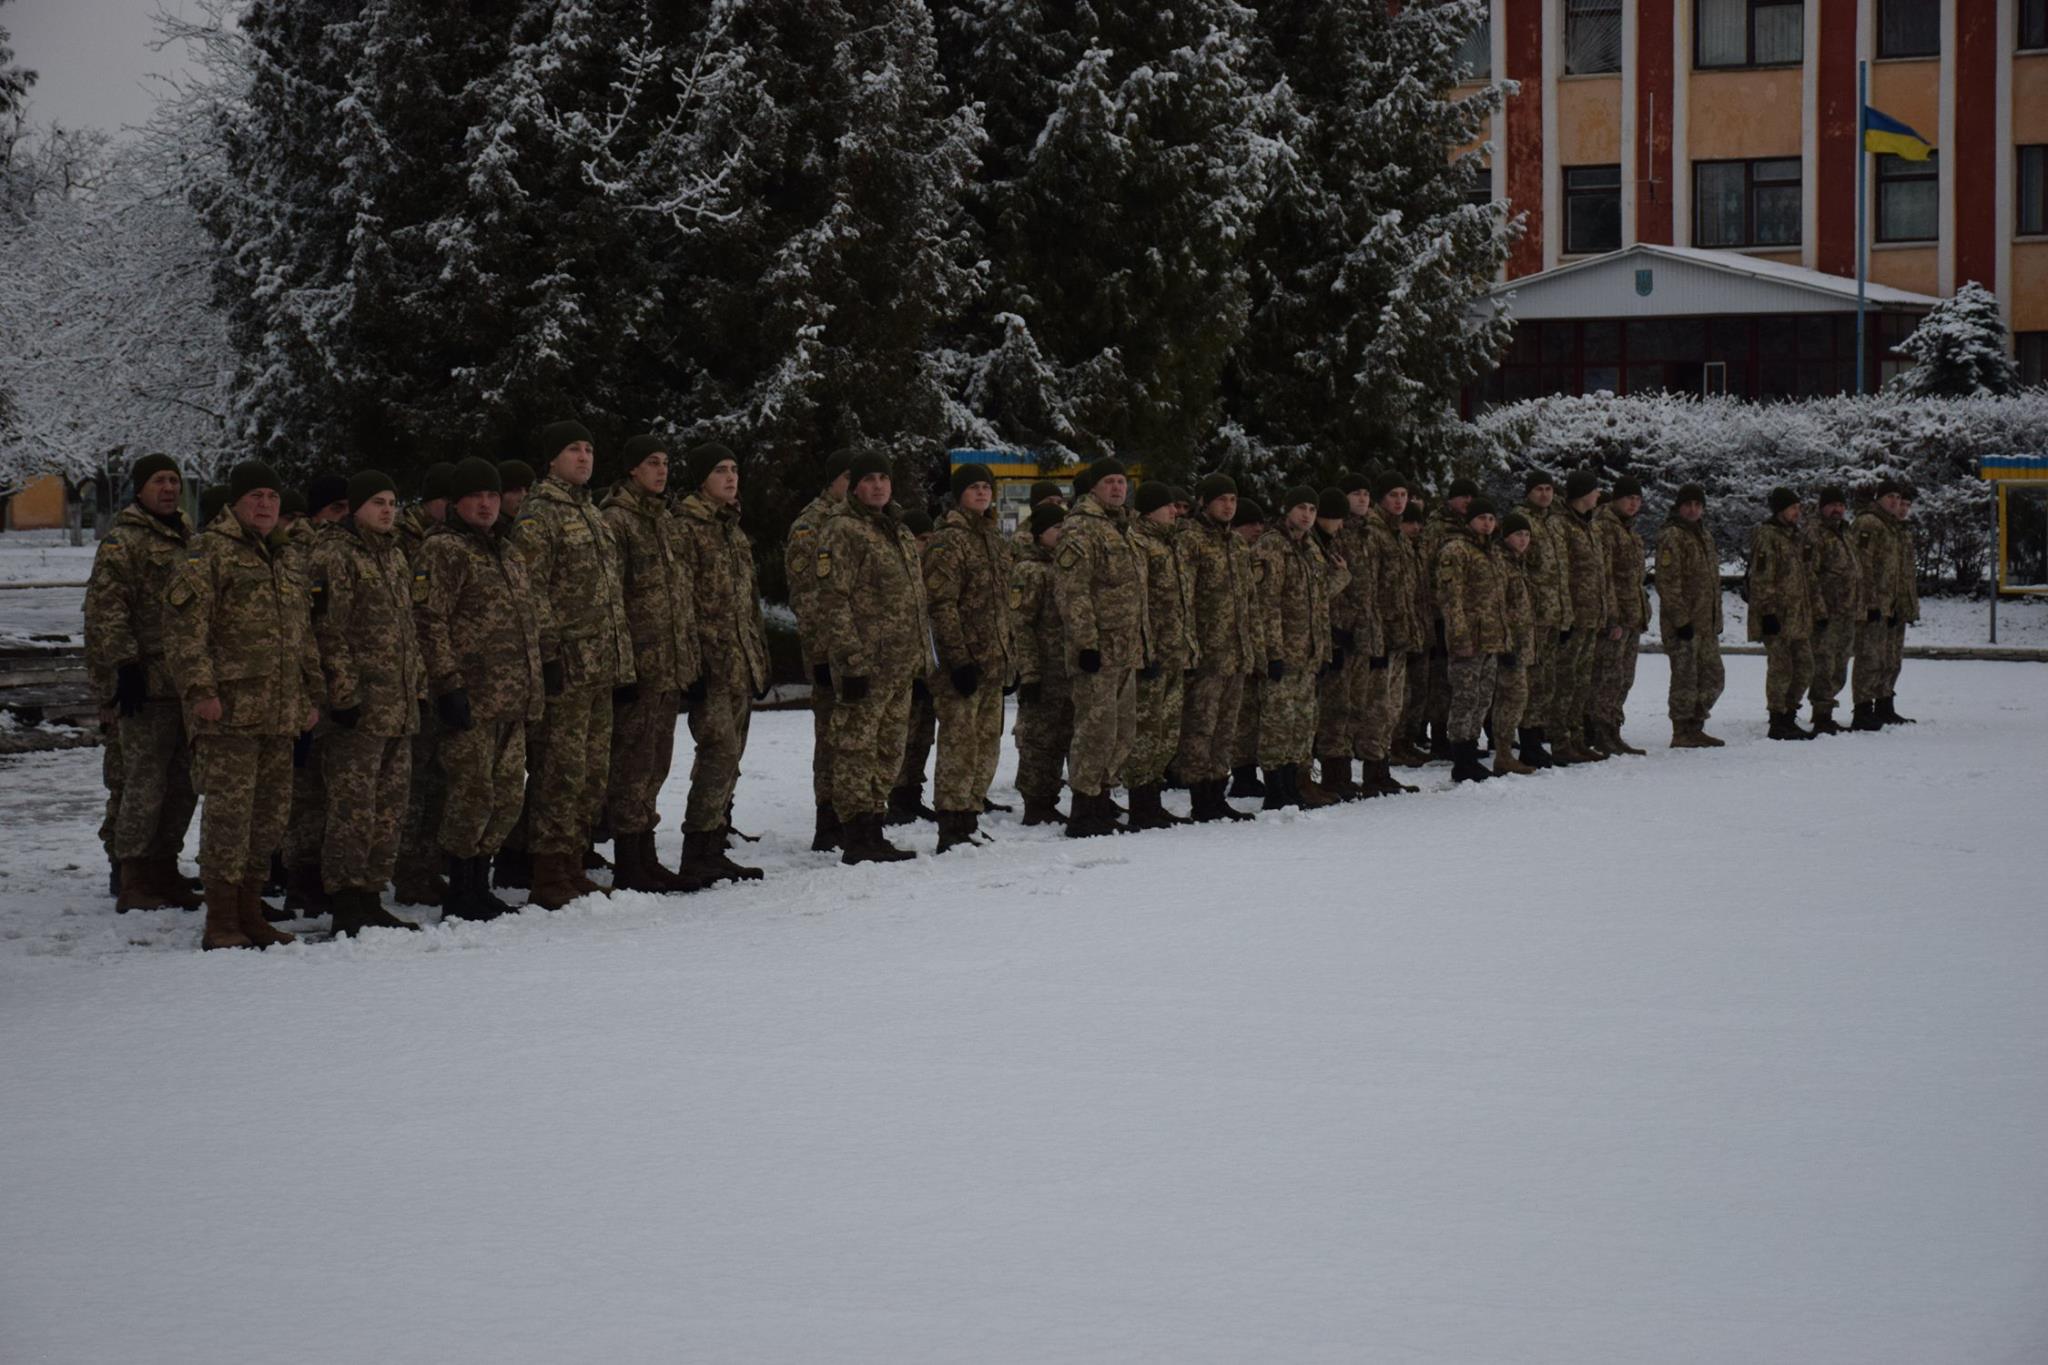 особовий склад 44 окремої артилерійської бригади  Збройних сил України (скорочено 44 ОАБр) м. Тернопіль